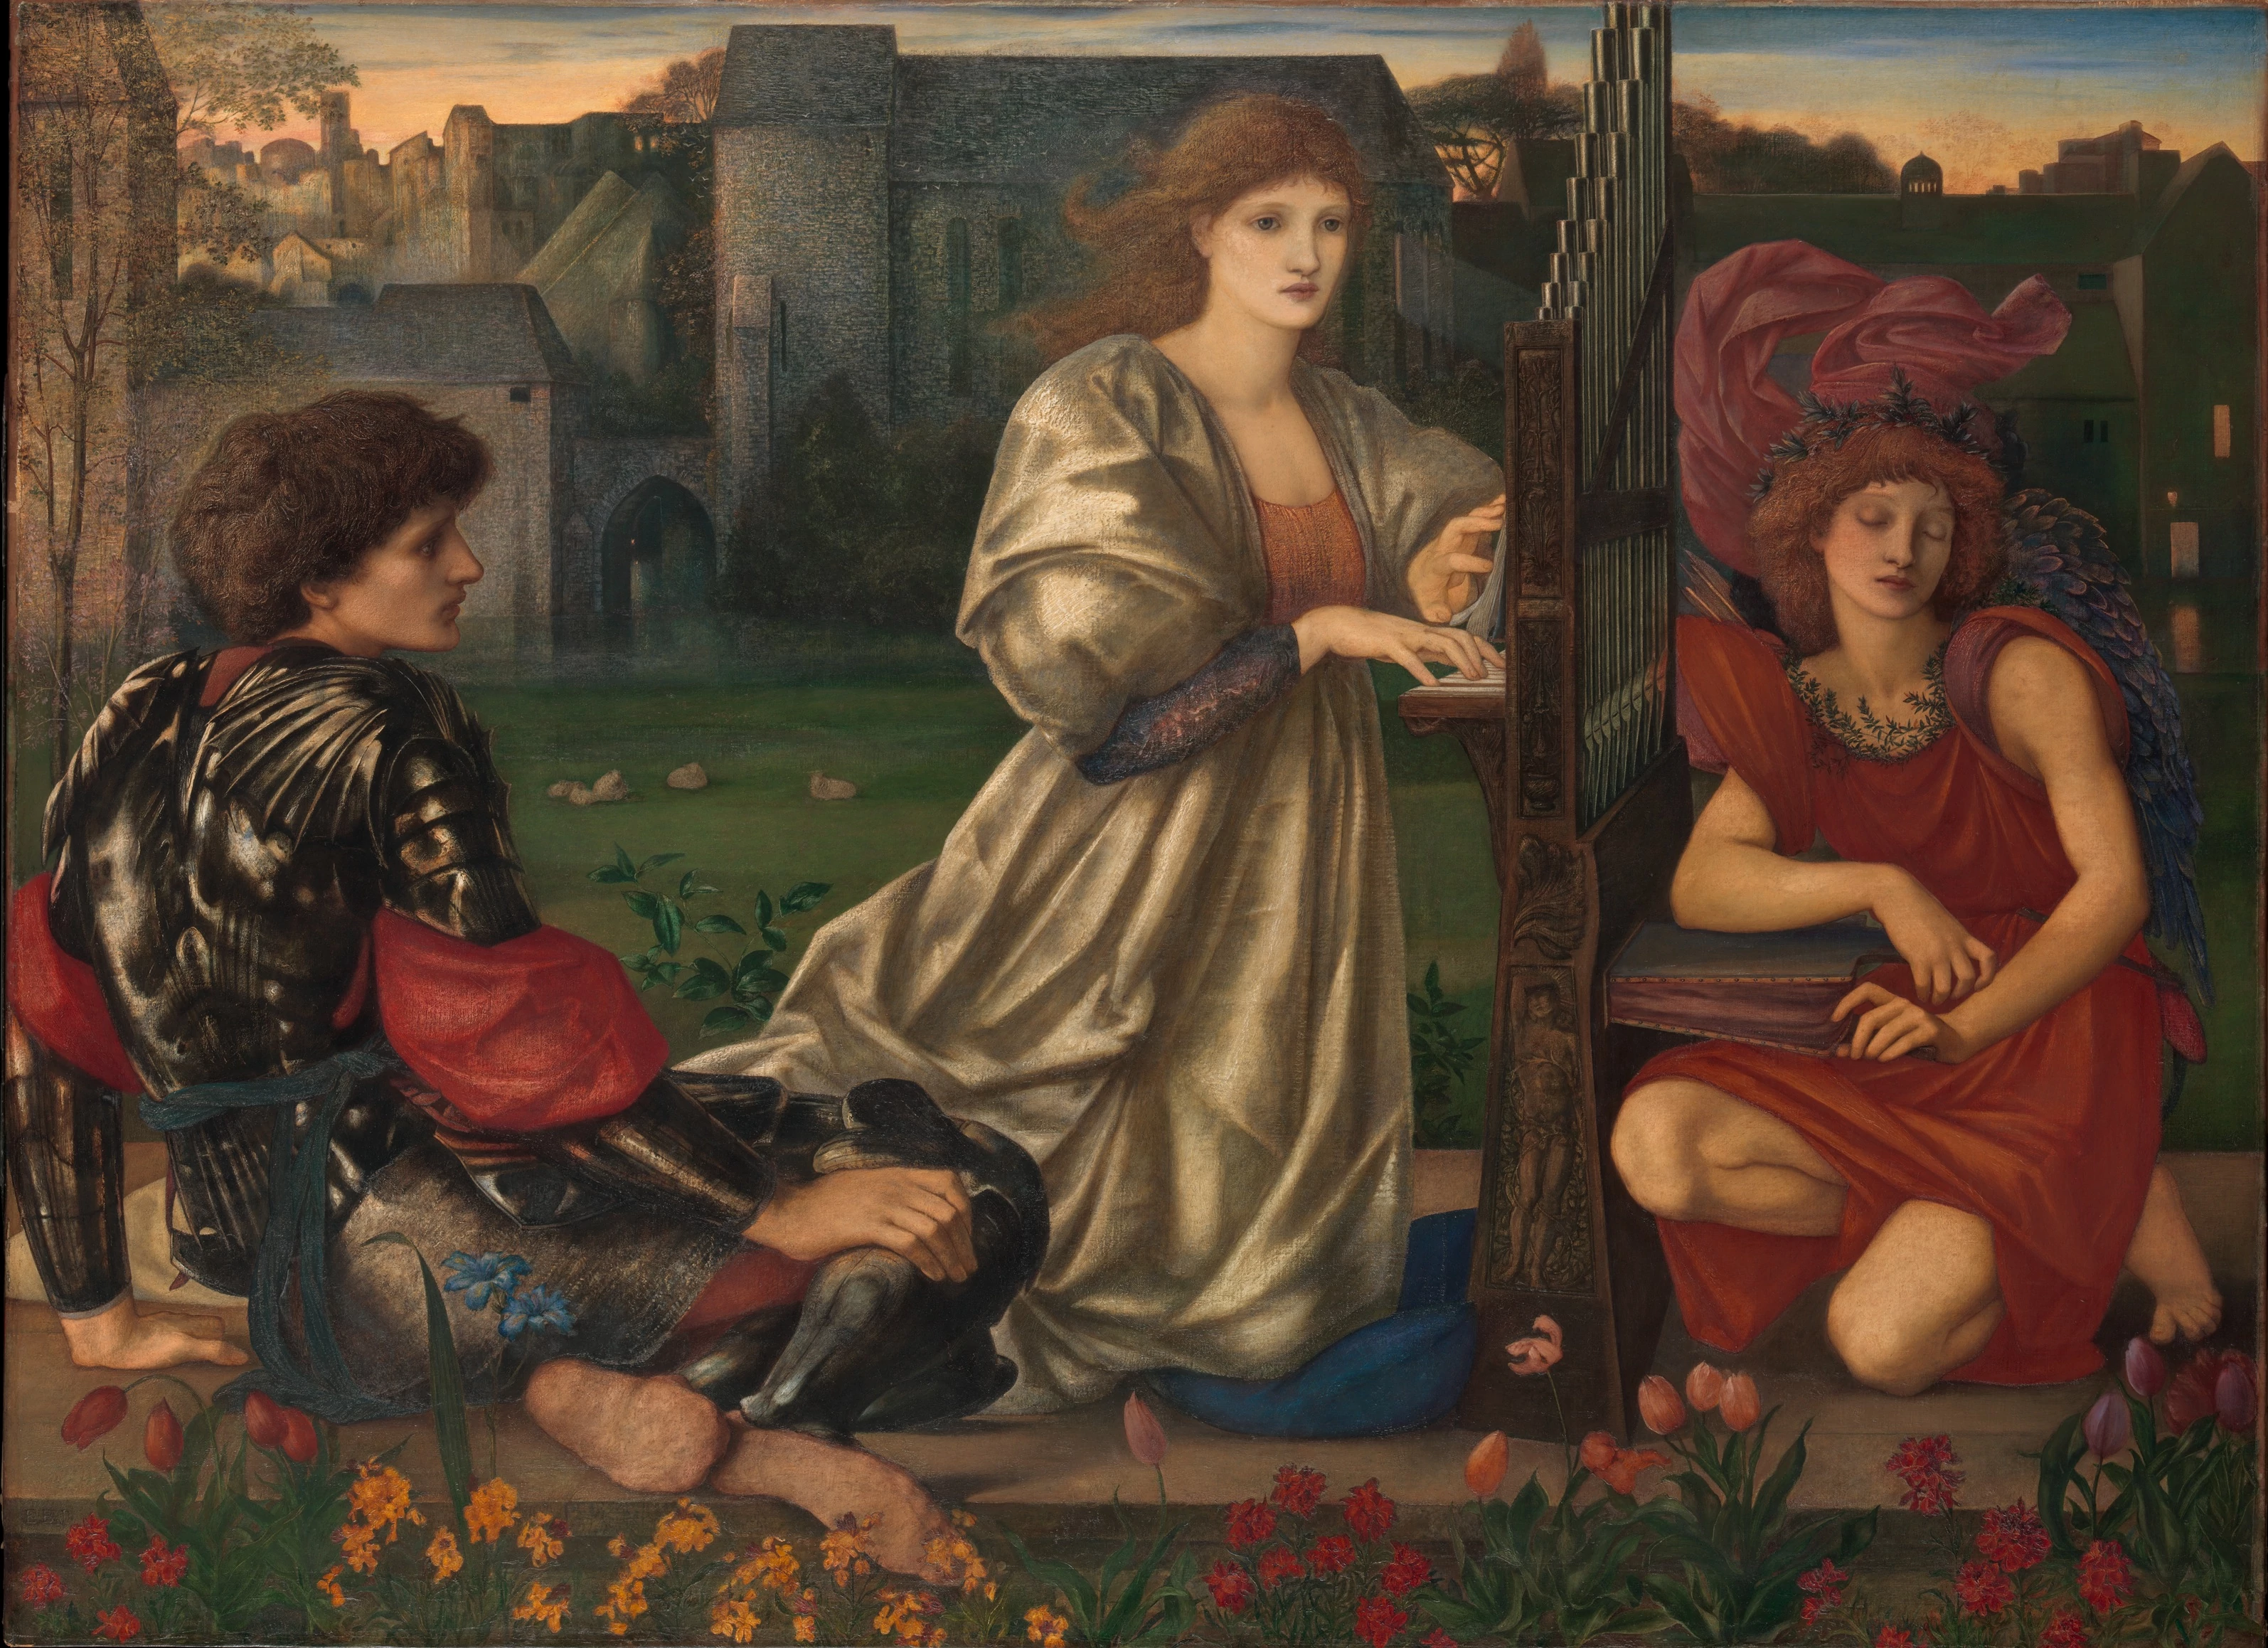 The Love Song, Edward Burne-Jones